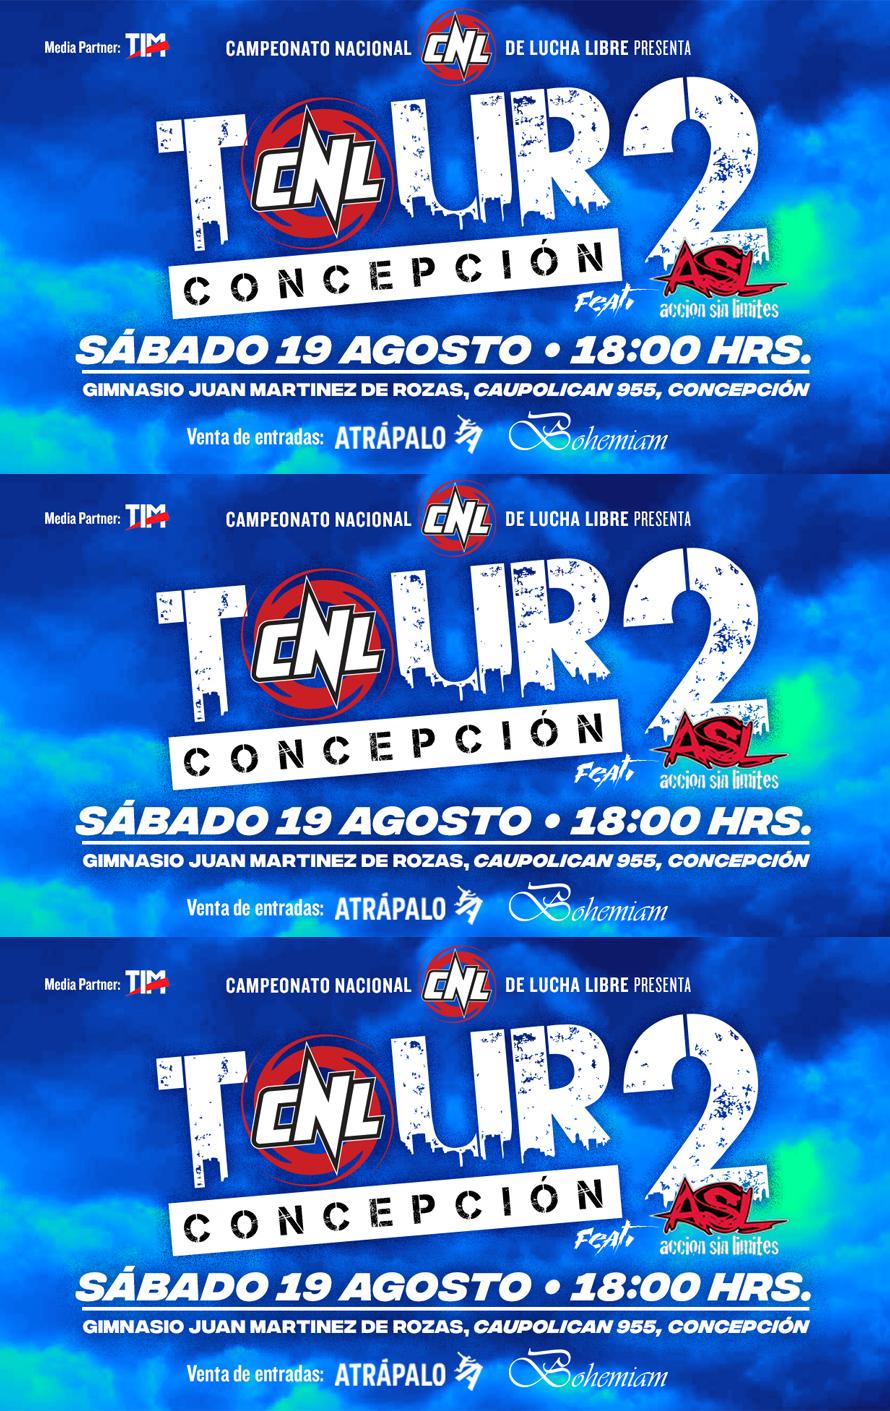 CNL Tour Concepción - II Feat. ASL 